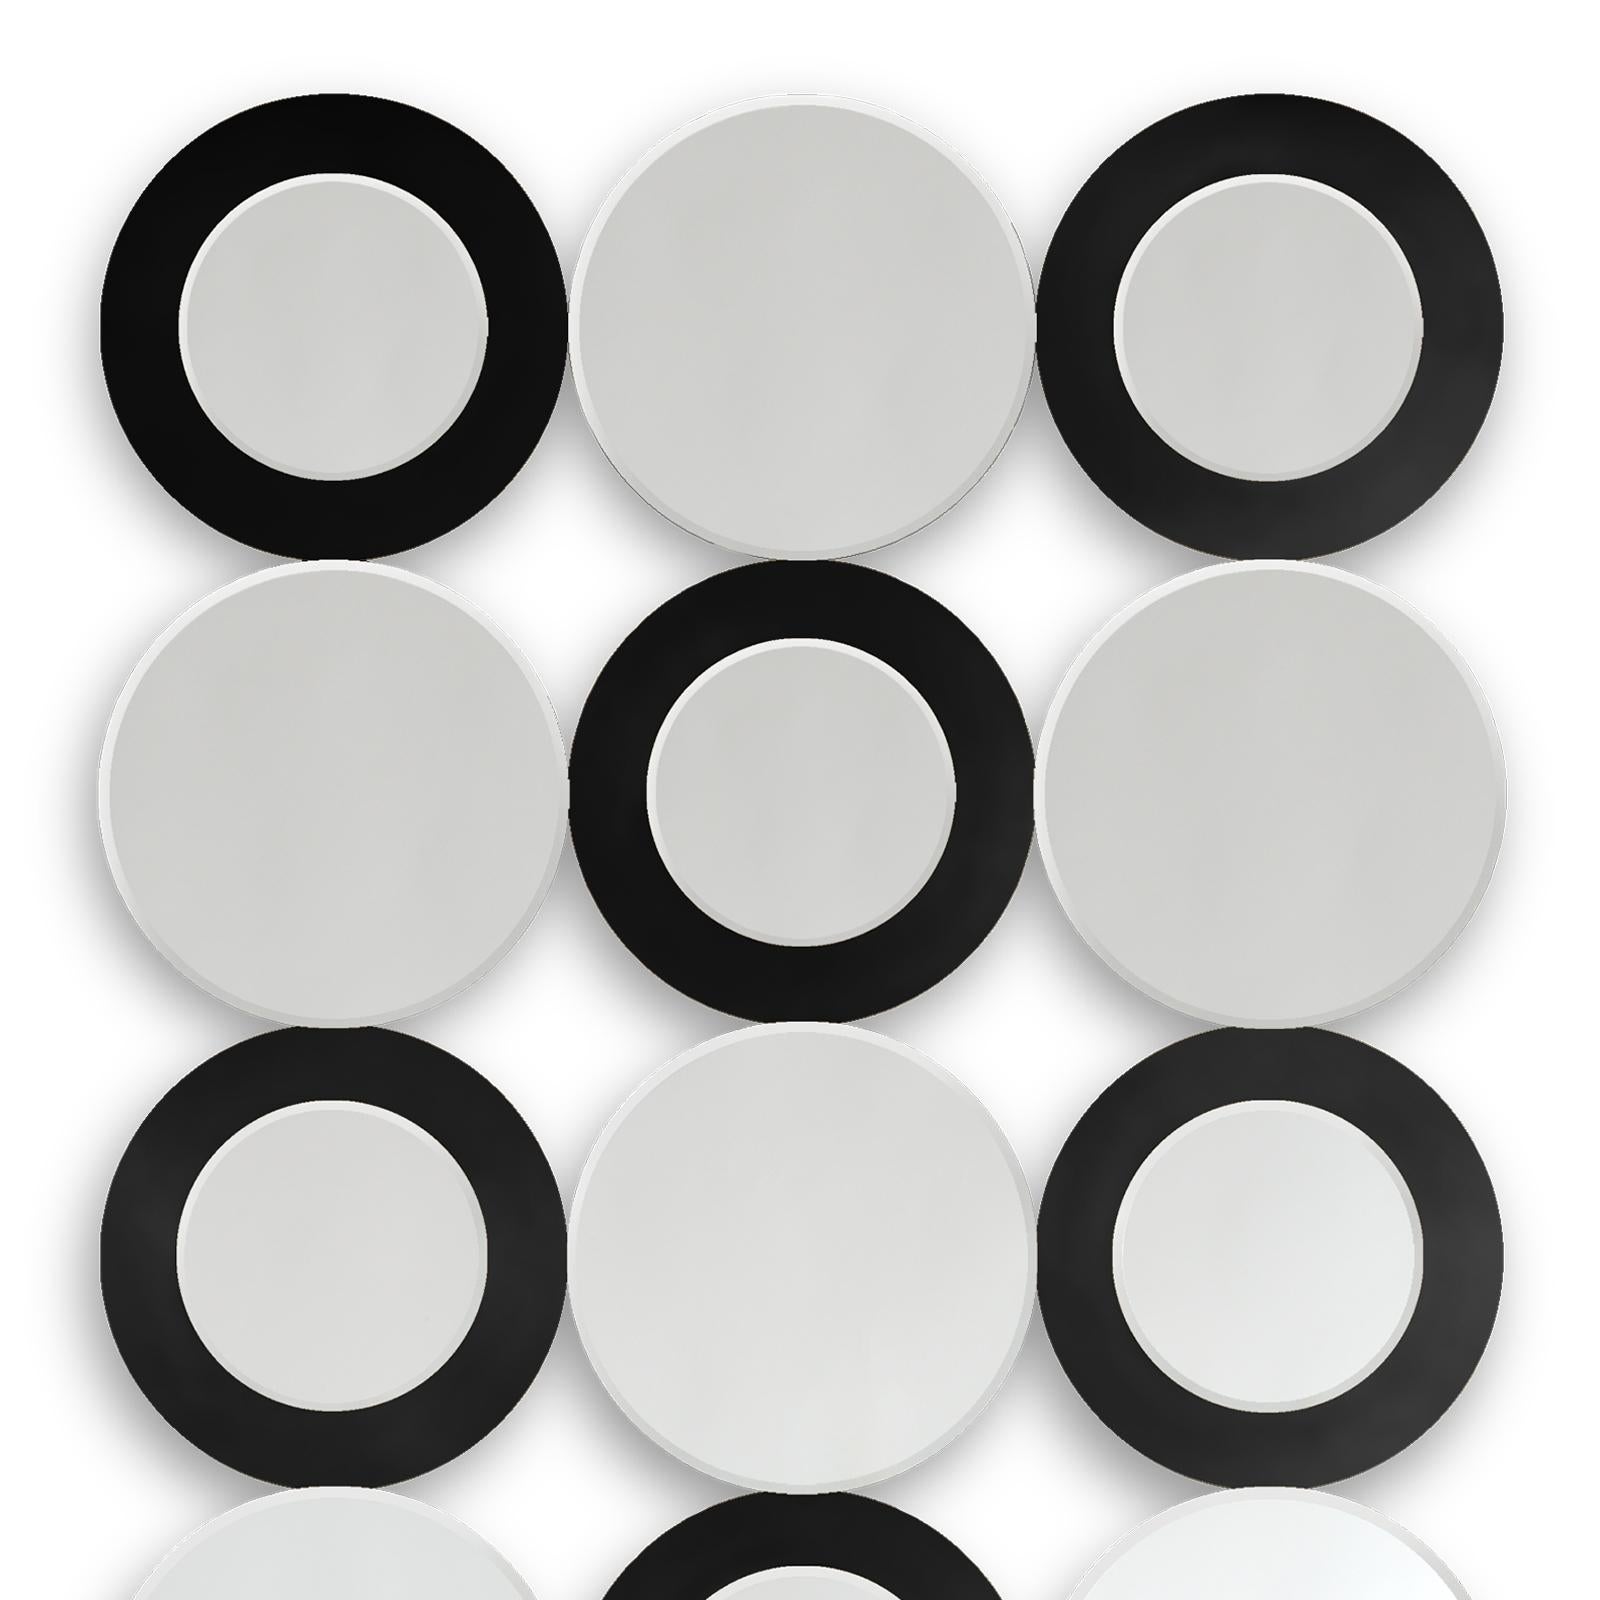 Spiegelringe mit 18 runden klaren Spiegelgläsern.
Mit schwarz lackierten Ringen an 9 Spiegeln.
Auch mit goldfarbenen Ringen an 9 Spiegeln erhältlich.